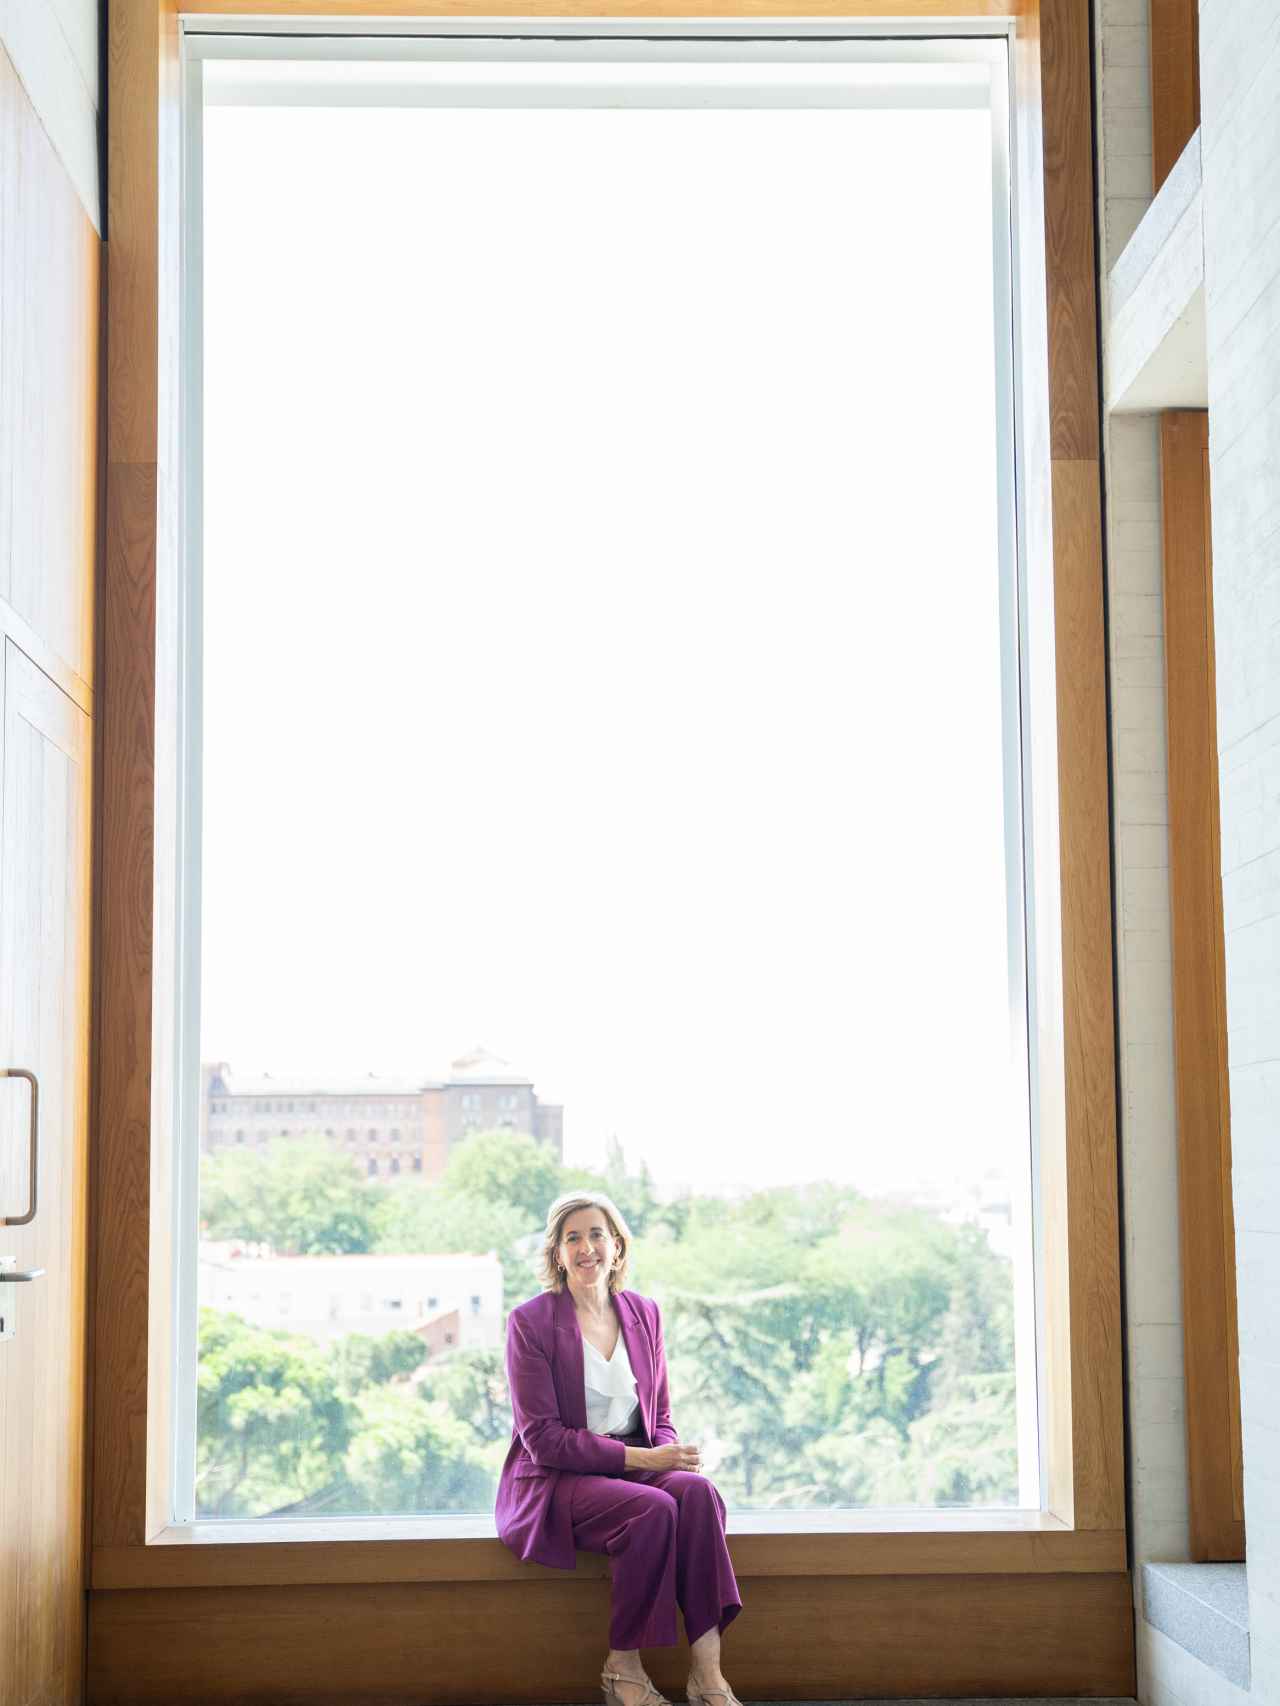 La presidenta delante de un gran ventanal del edificio.